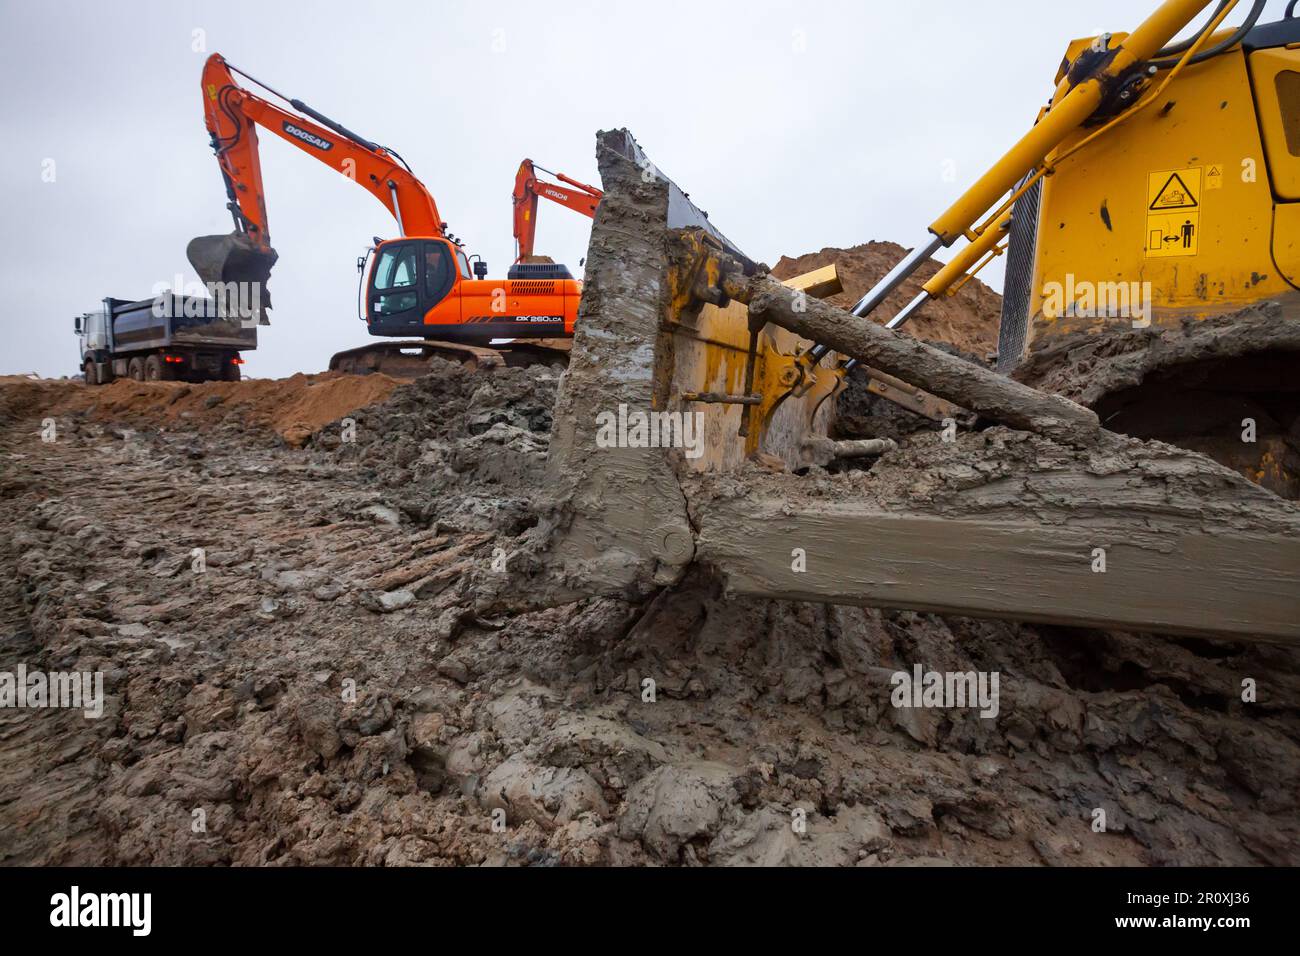 UST-Luga, oblast de Leningrad, Russie - 16 novembre 2021 : excavateurs Doosan et Hitachi sur le chantier. Lame de bouteur dans la boue droite. Jour de pluie, Banque D'Images